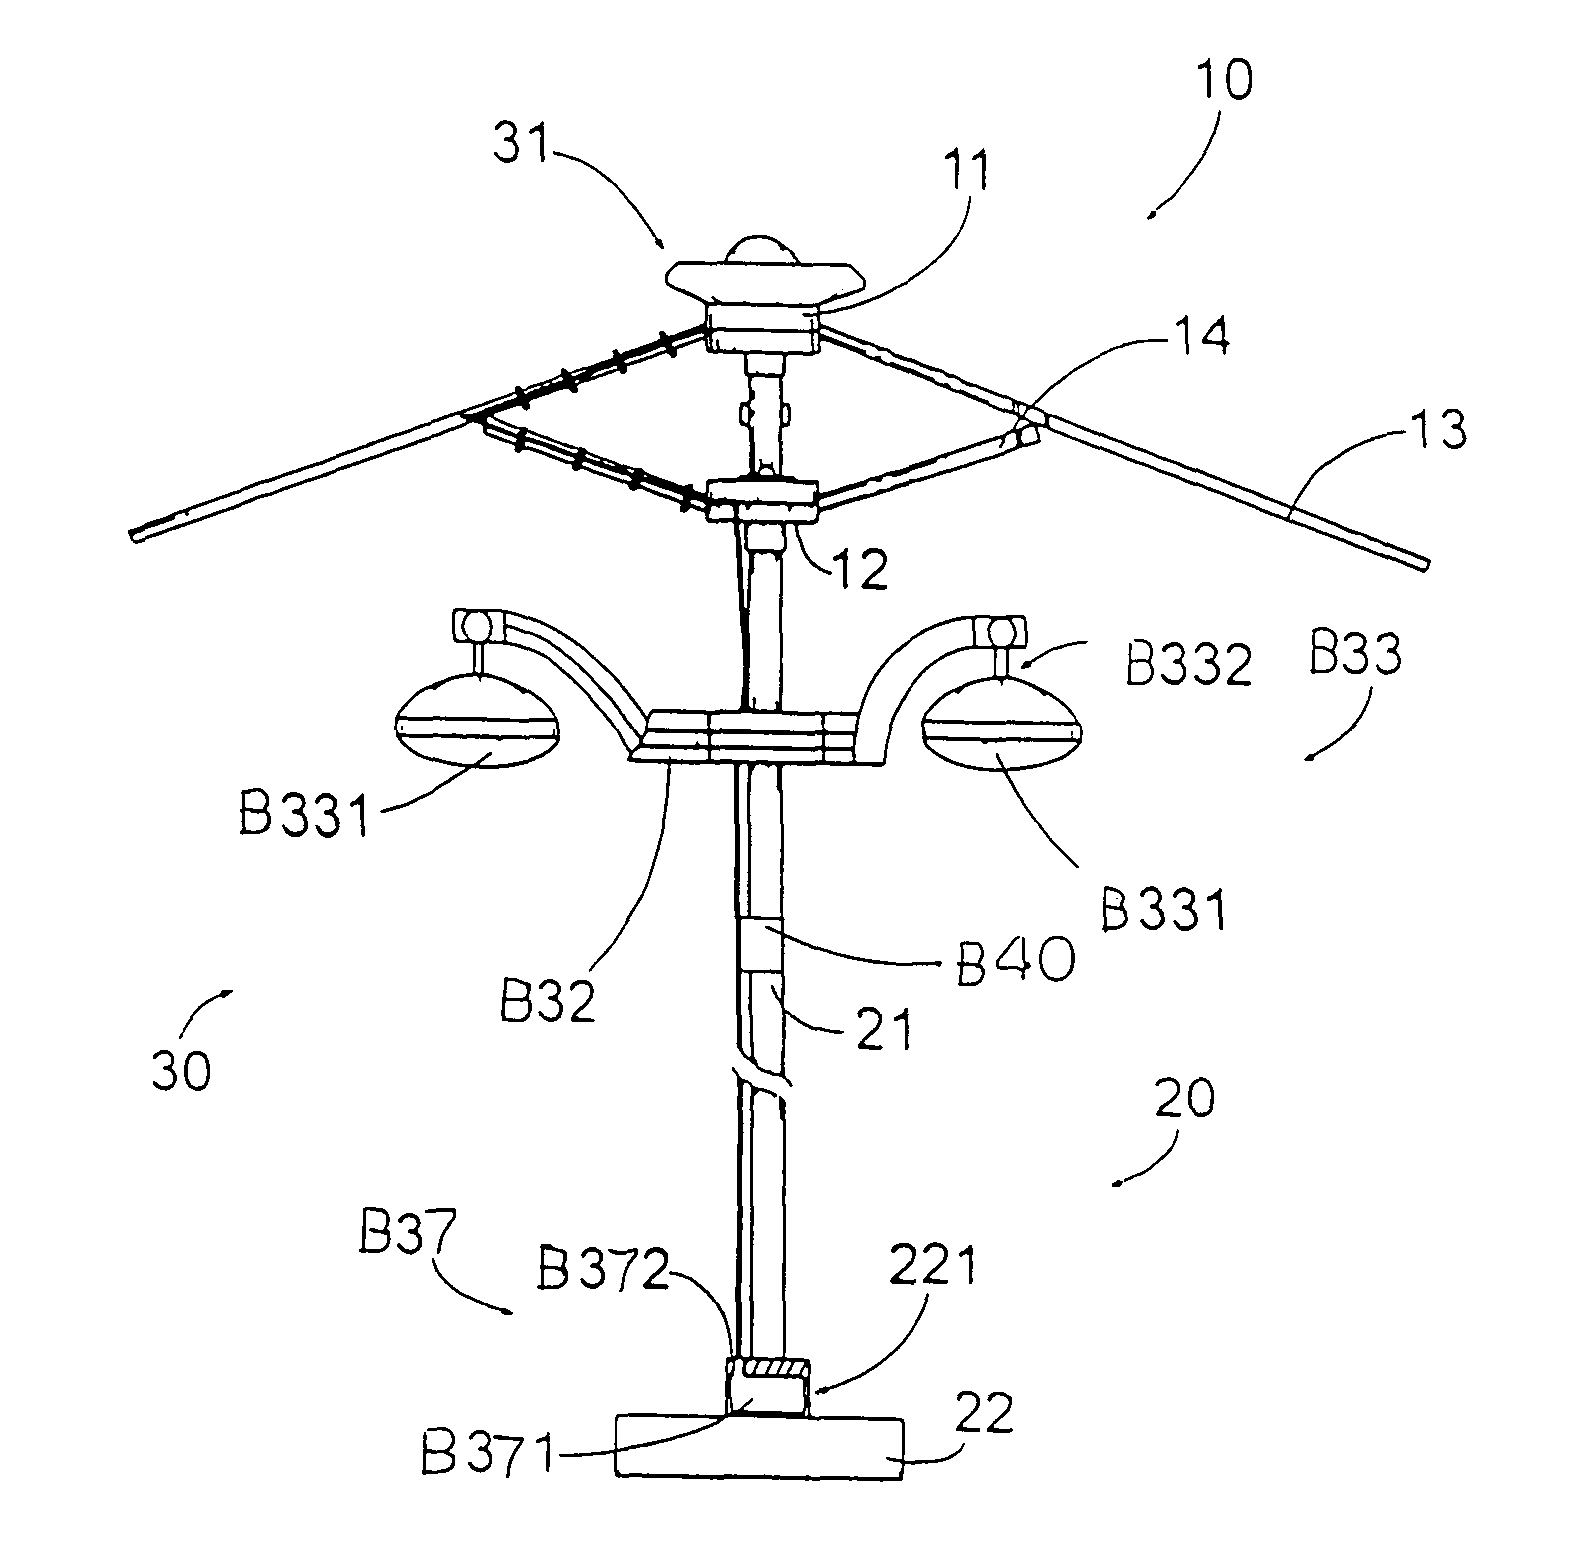 Audio system for outdoor umbrella